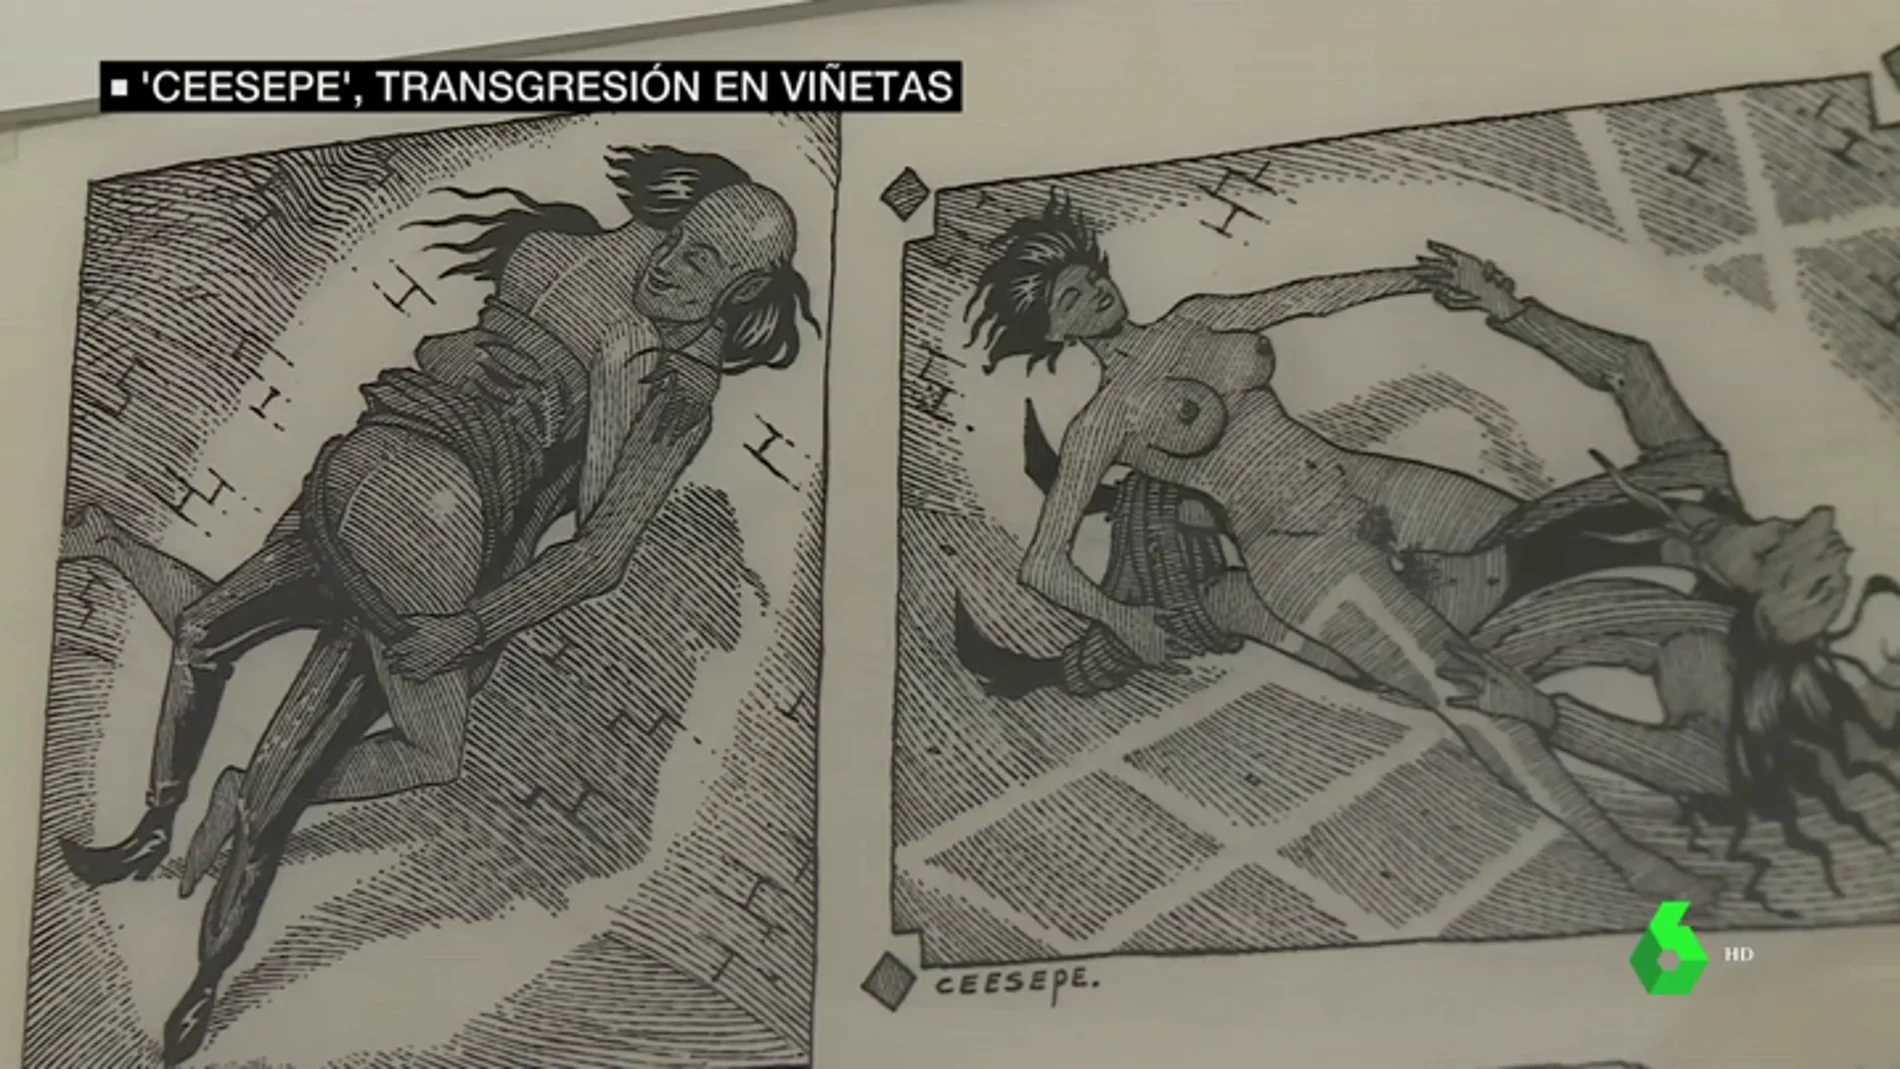 Contracultura y transgresión: las viñetas que repasan el arte políticamente incorrecto de Ceesepe 